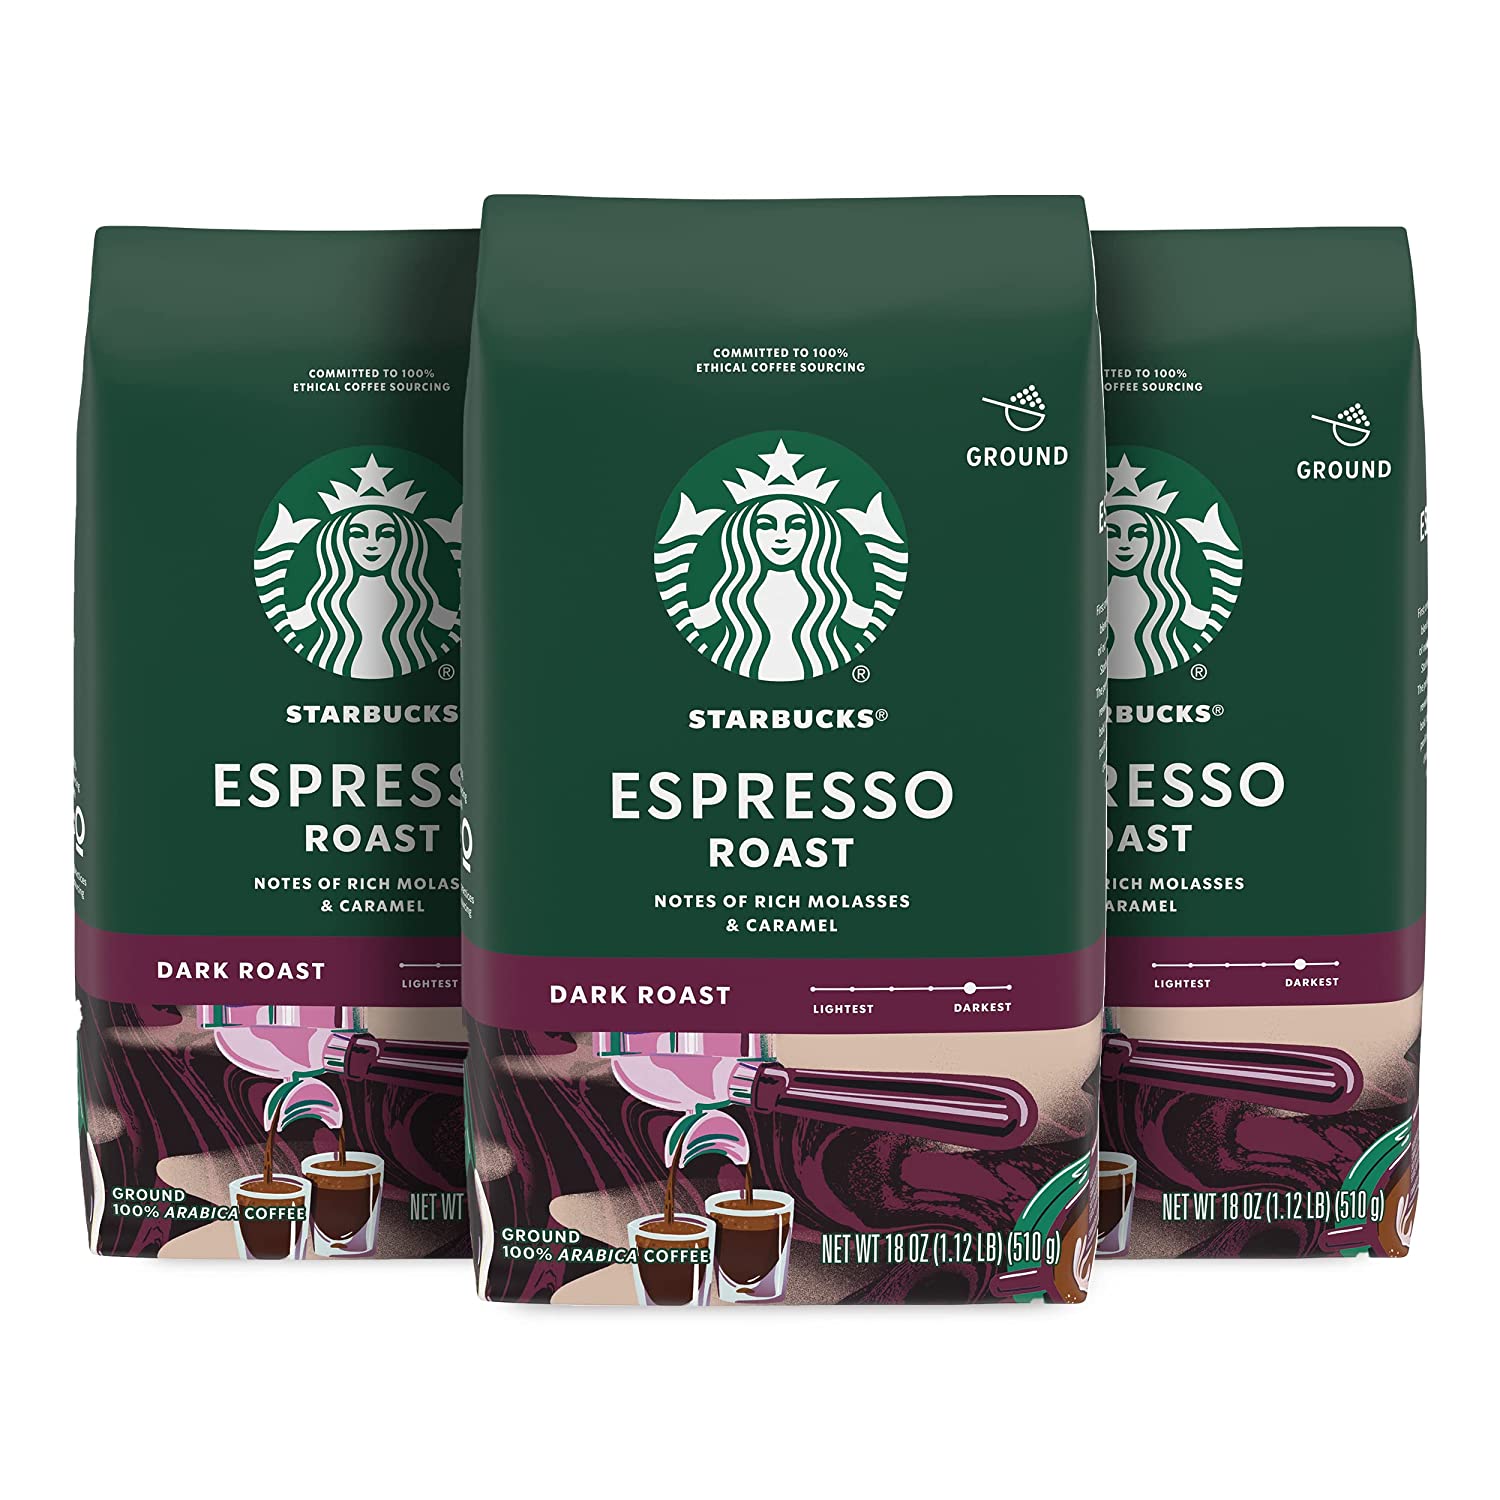 Starbucks Dark Roast Ground Coffee Flavor.